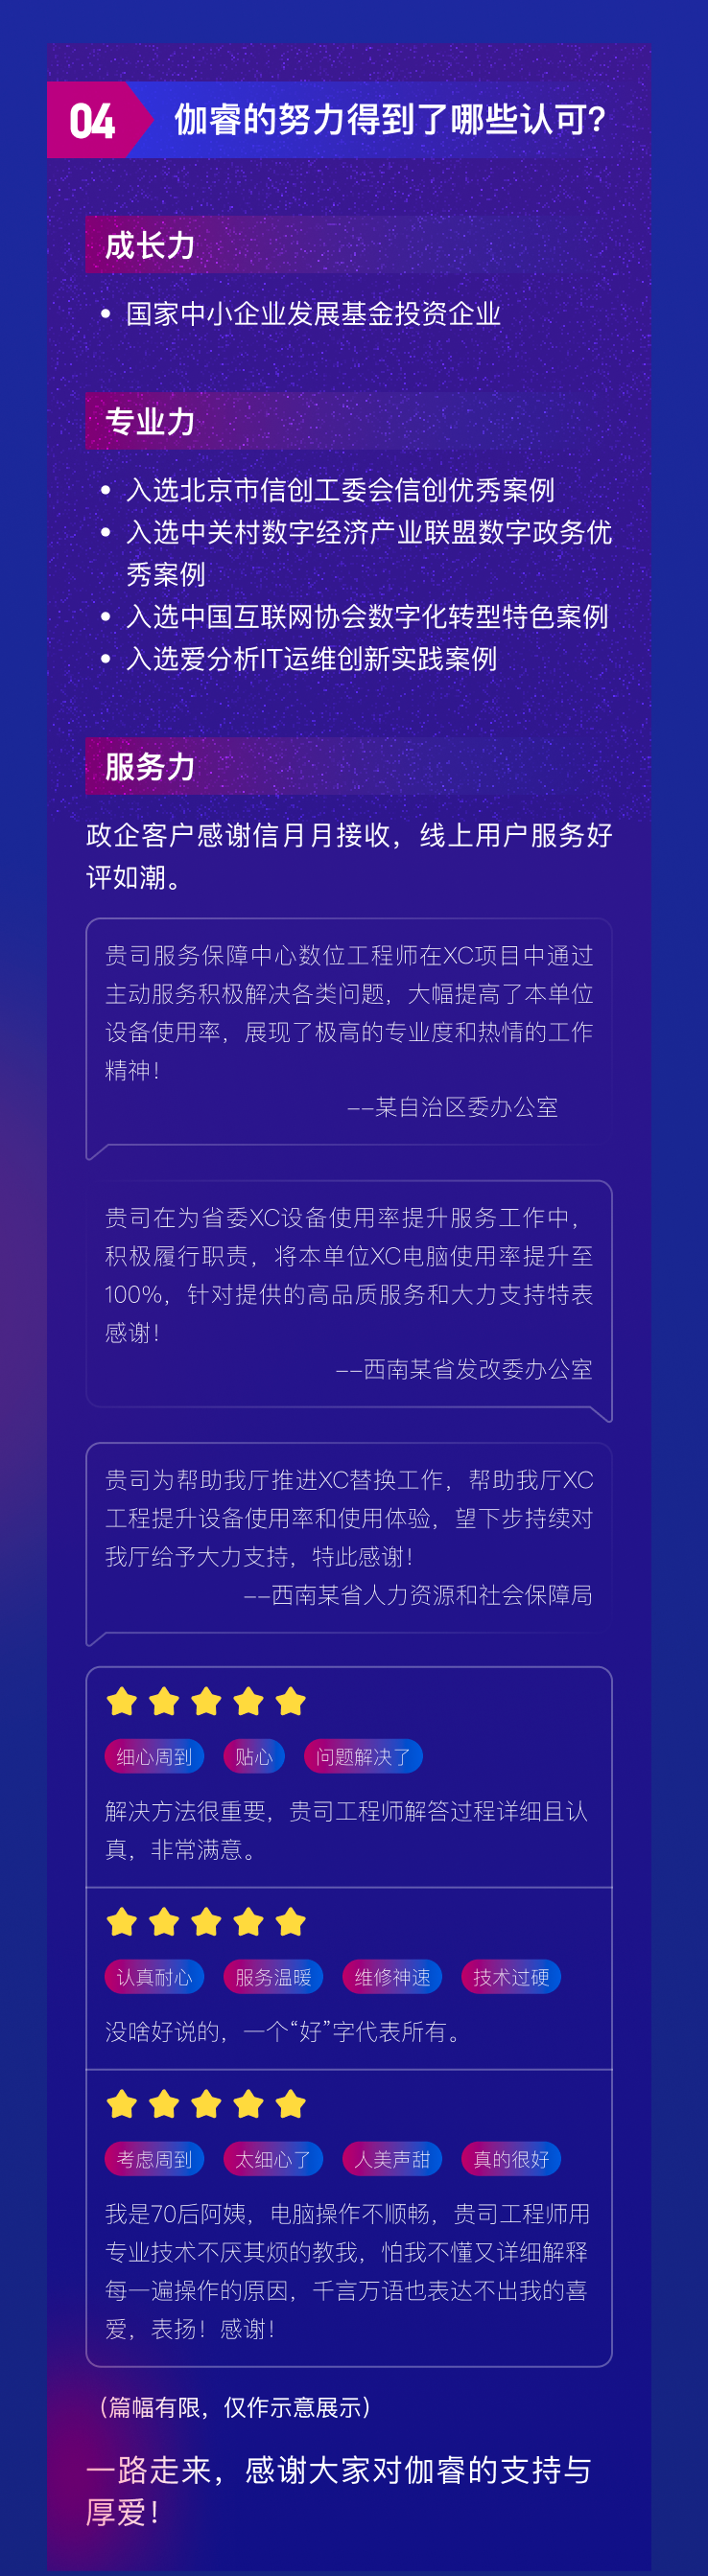 兴发娱乐·(中国)官方网站